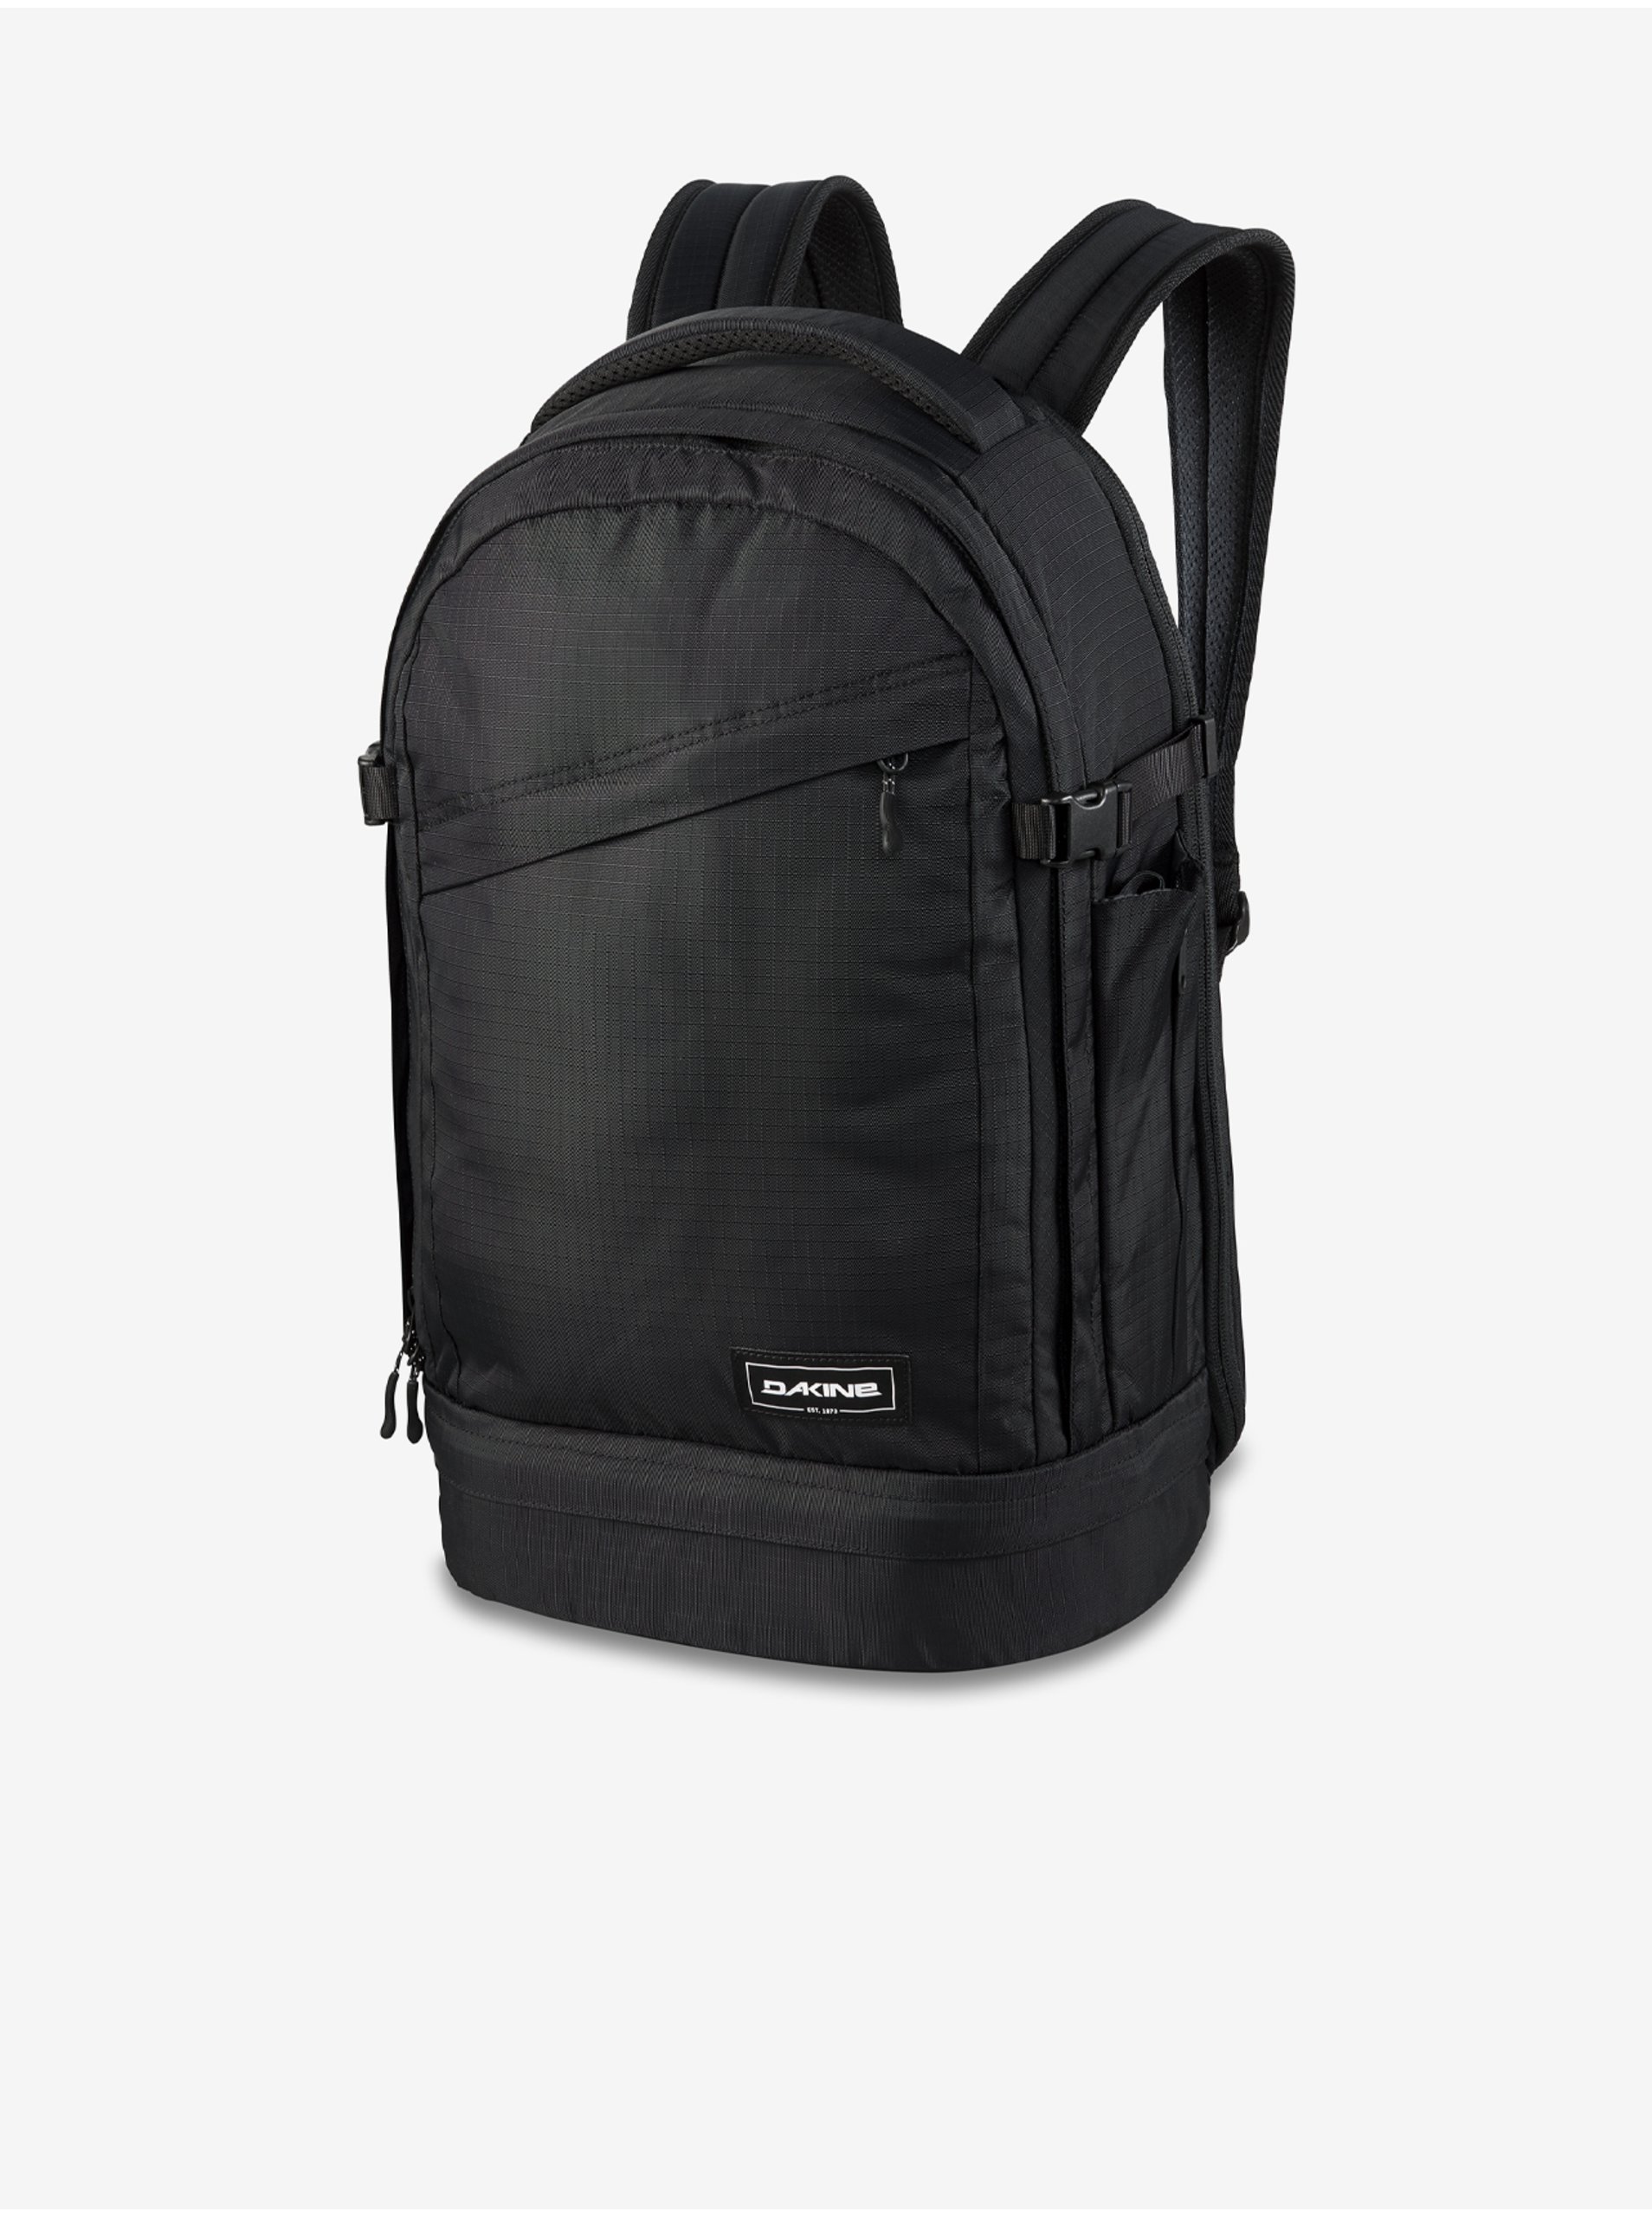 Black backpack Dakine Verge - Men